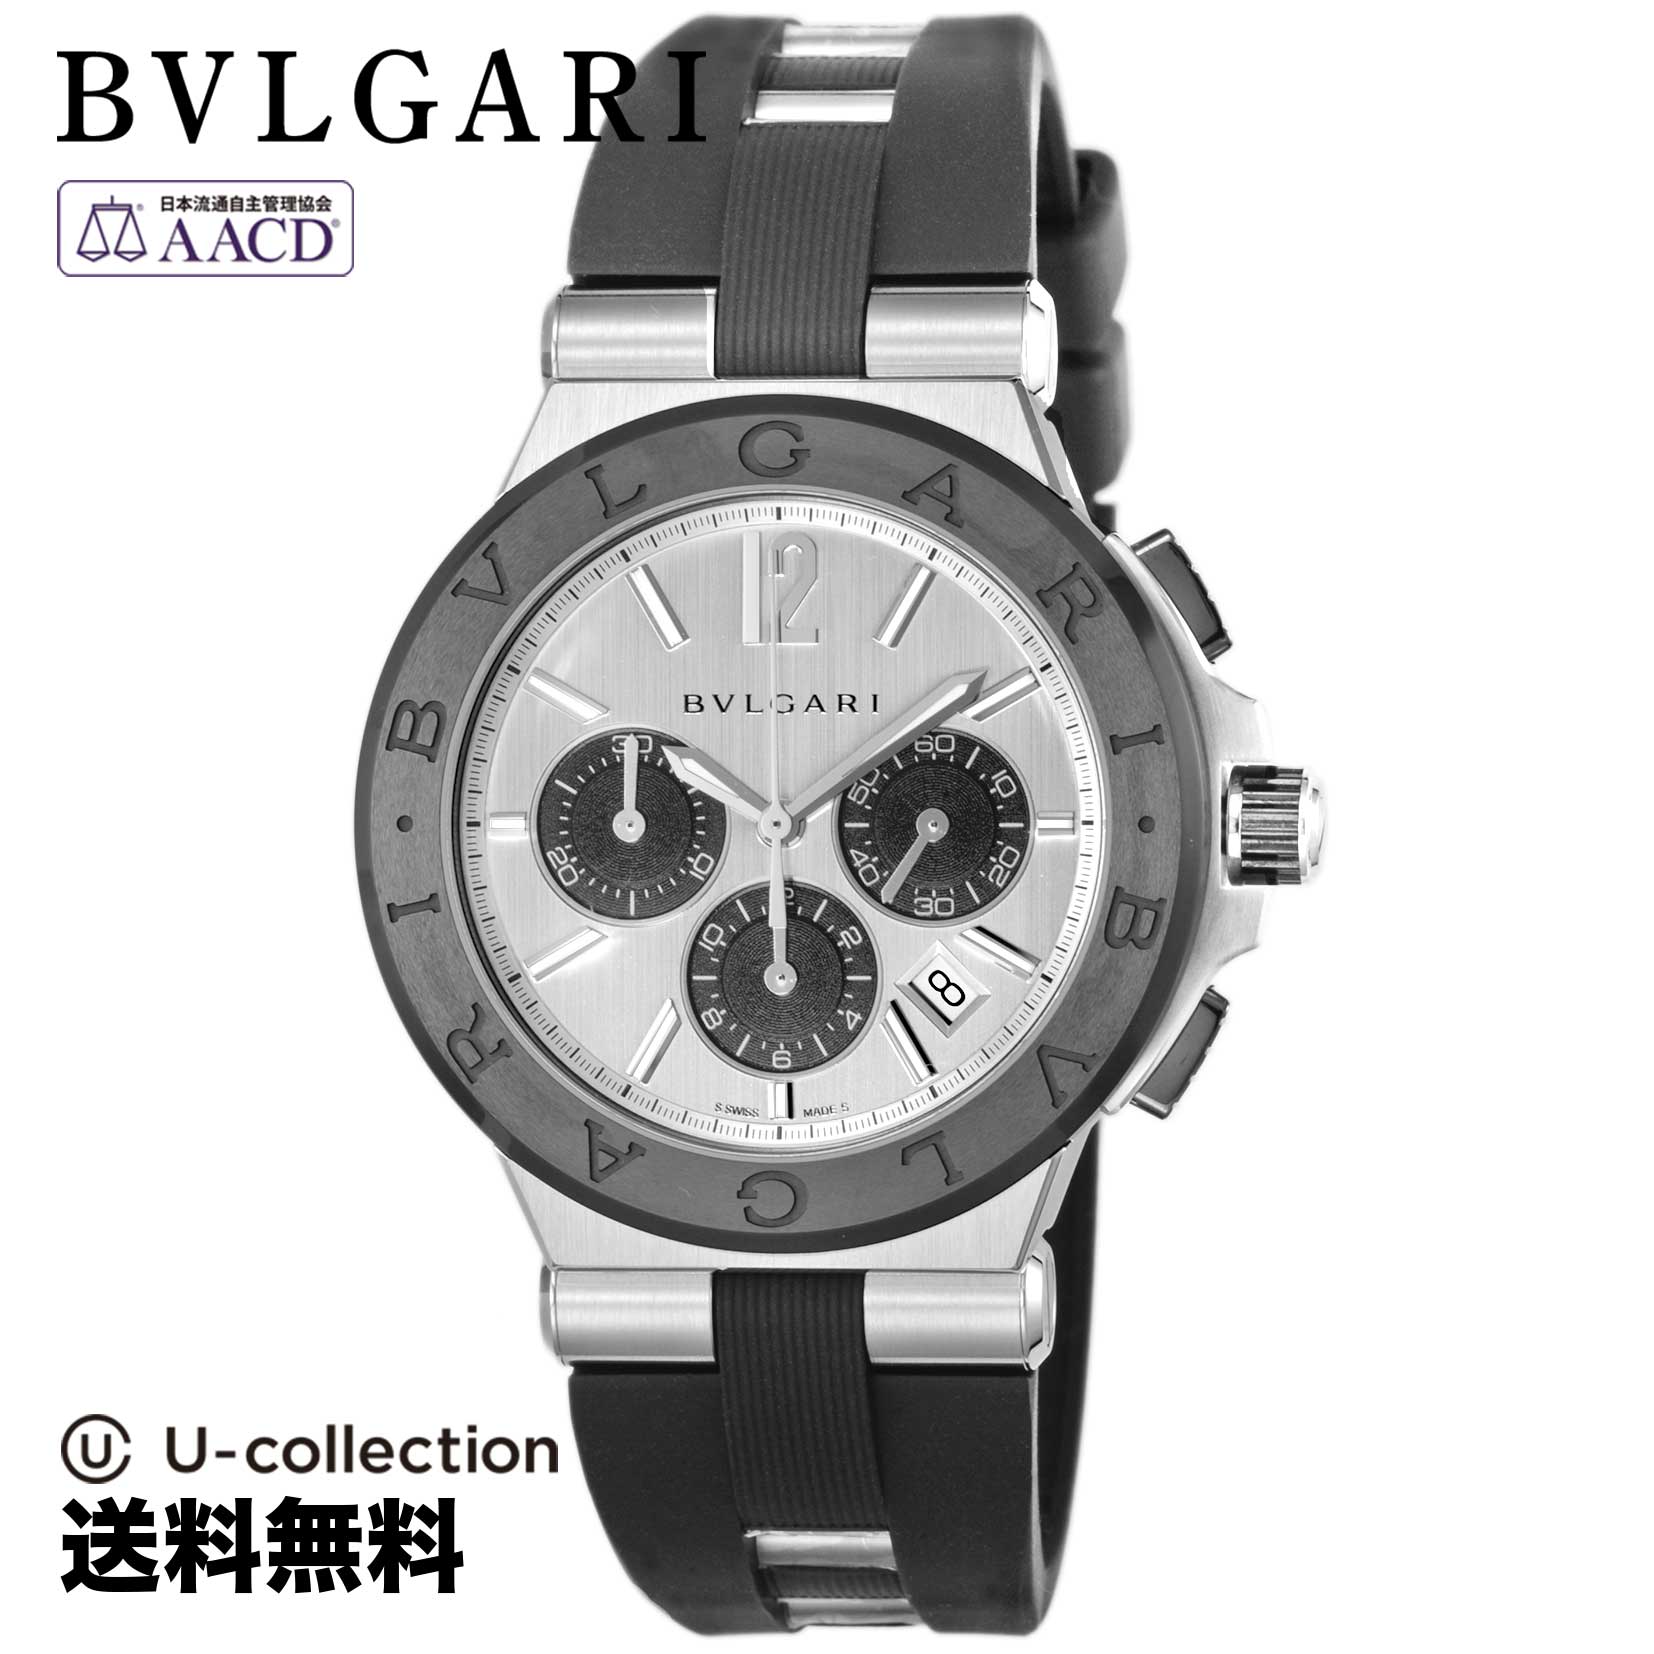 ブルガリ【腕時計】 BVLGARI(ブルガリ) DIAGONO / ディアゴノ メンズ シルバー 自動巻 DG42C6SCVDCH 時計 ブランド